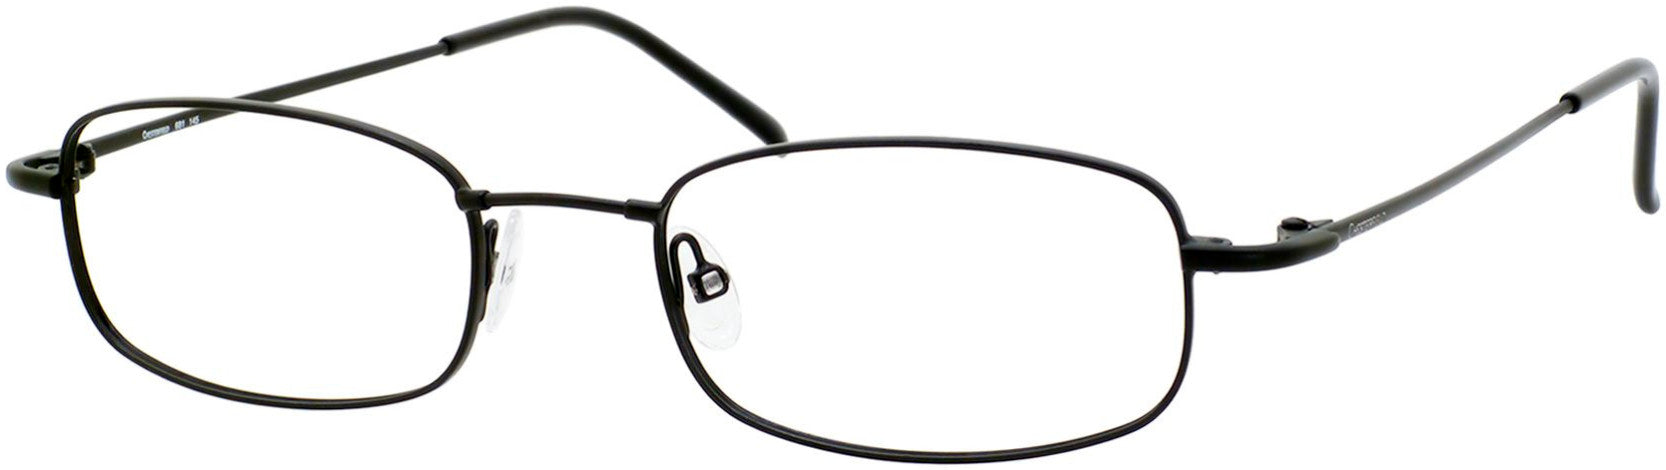  Chesterfield 681 Rectangular Eyeglasses 0TZ7-0TZ7  Black (00 Demo Lens)